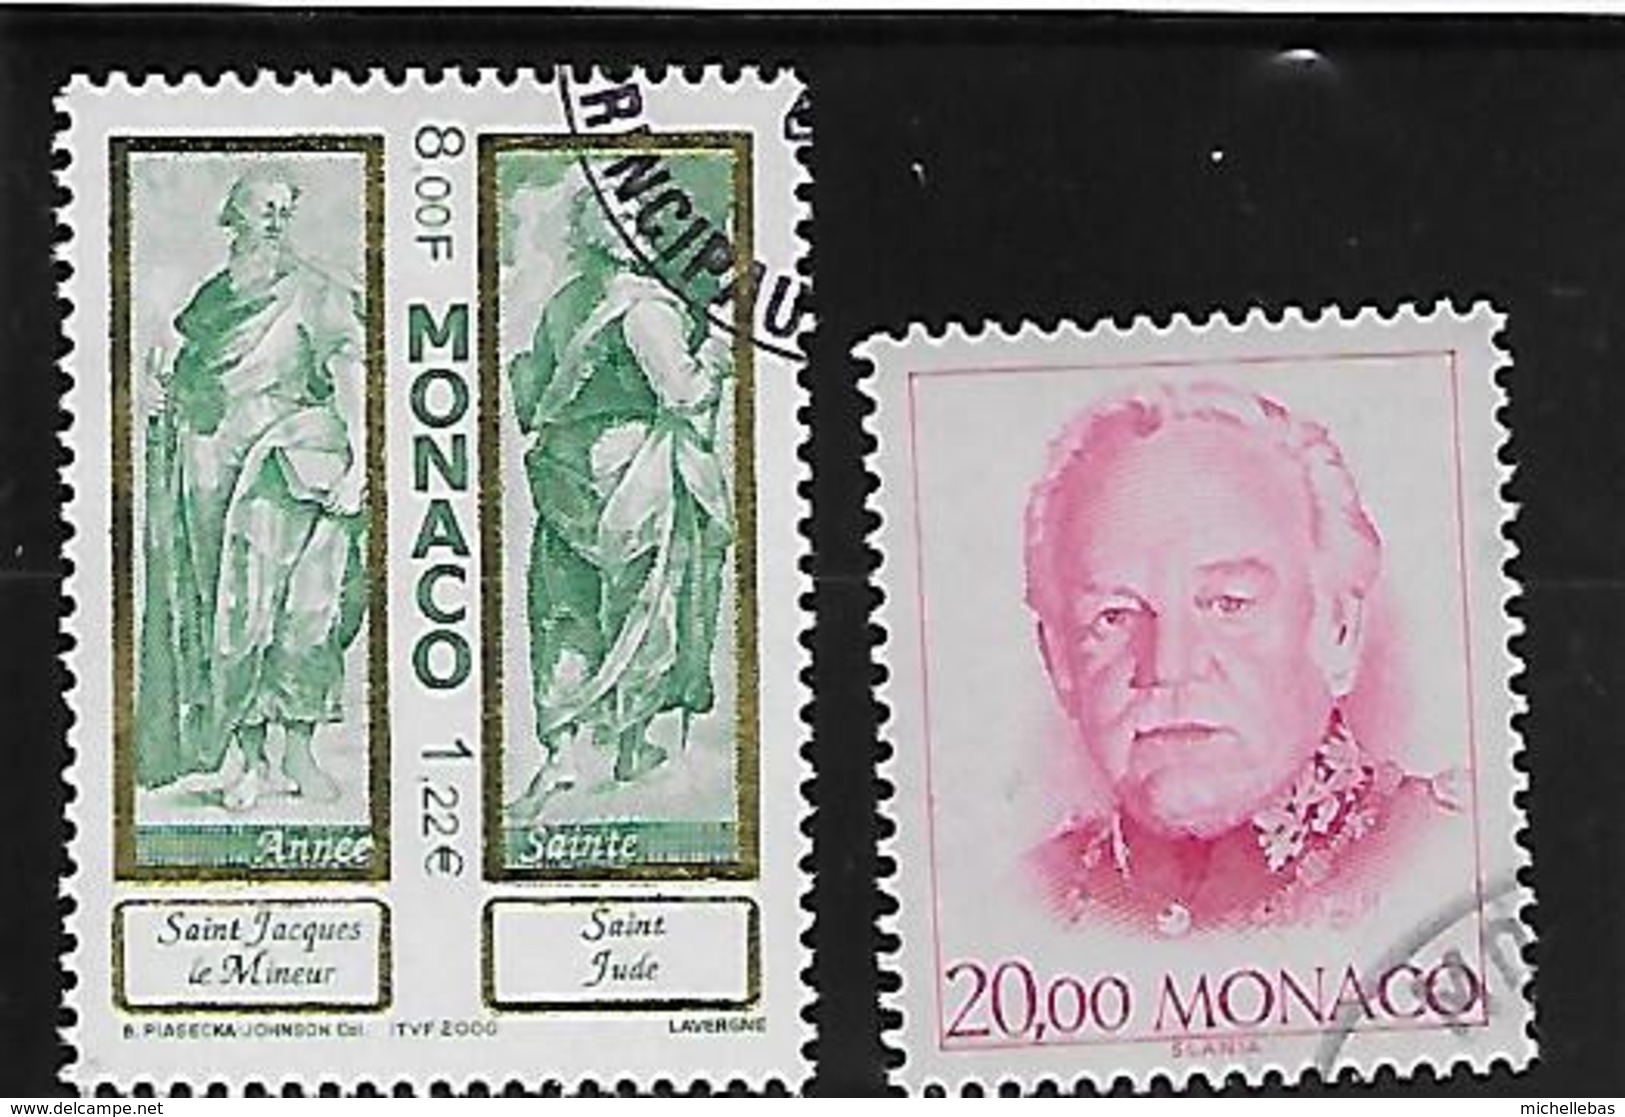 SAINT JACQUES LE MINEUR ET SAINT JUDE - Used Stamps